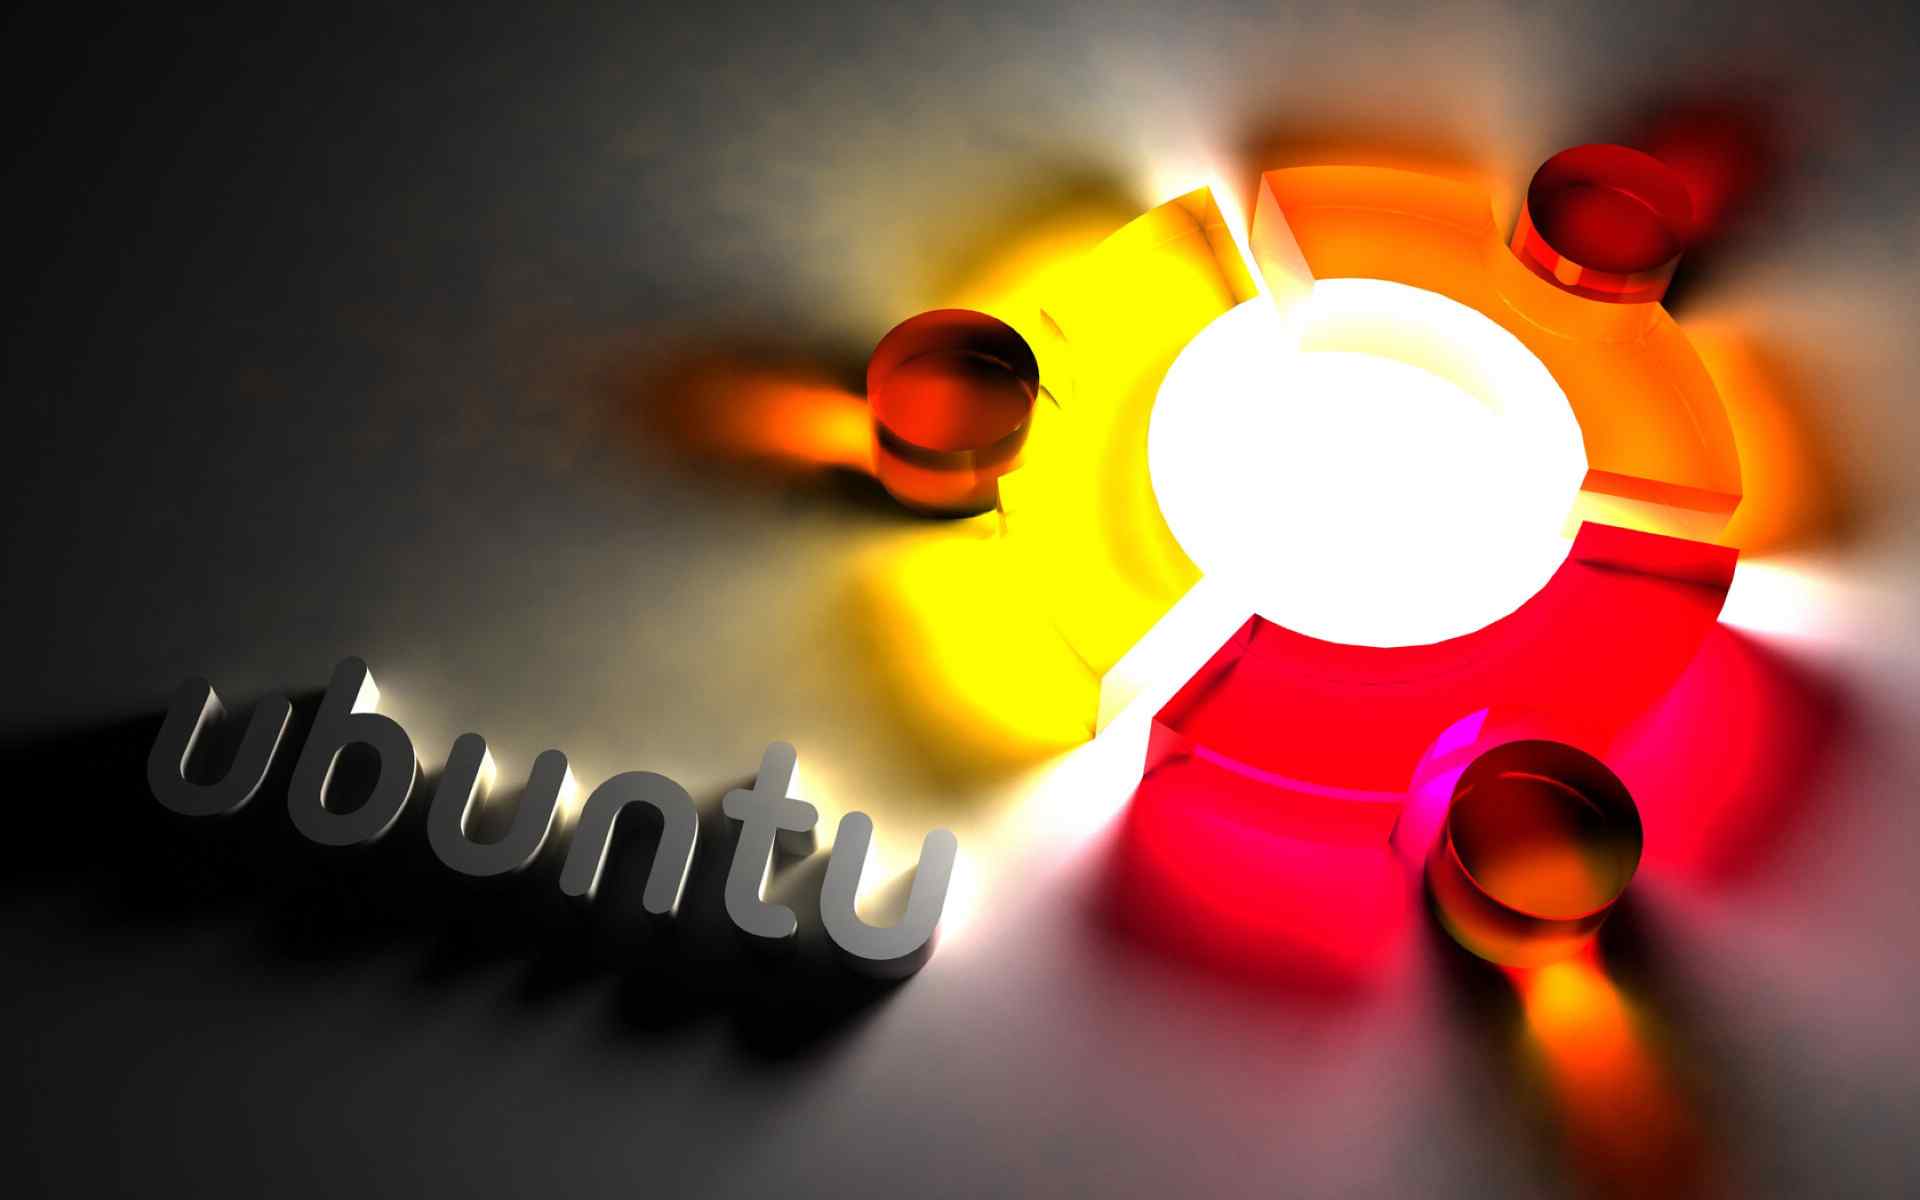 Linuxu buntu操作系统高清电脑桌面壁纸下载(一)